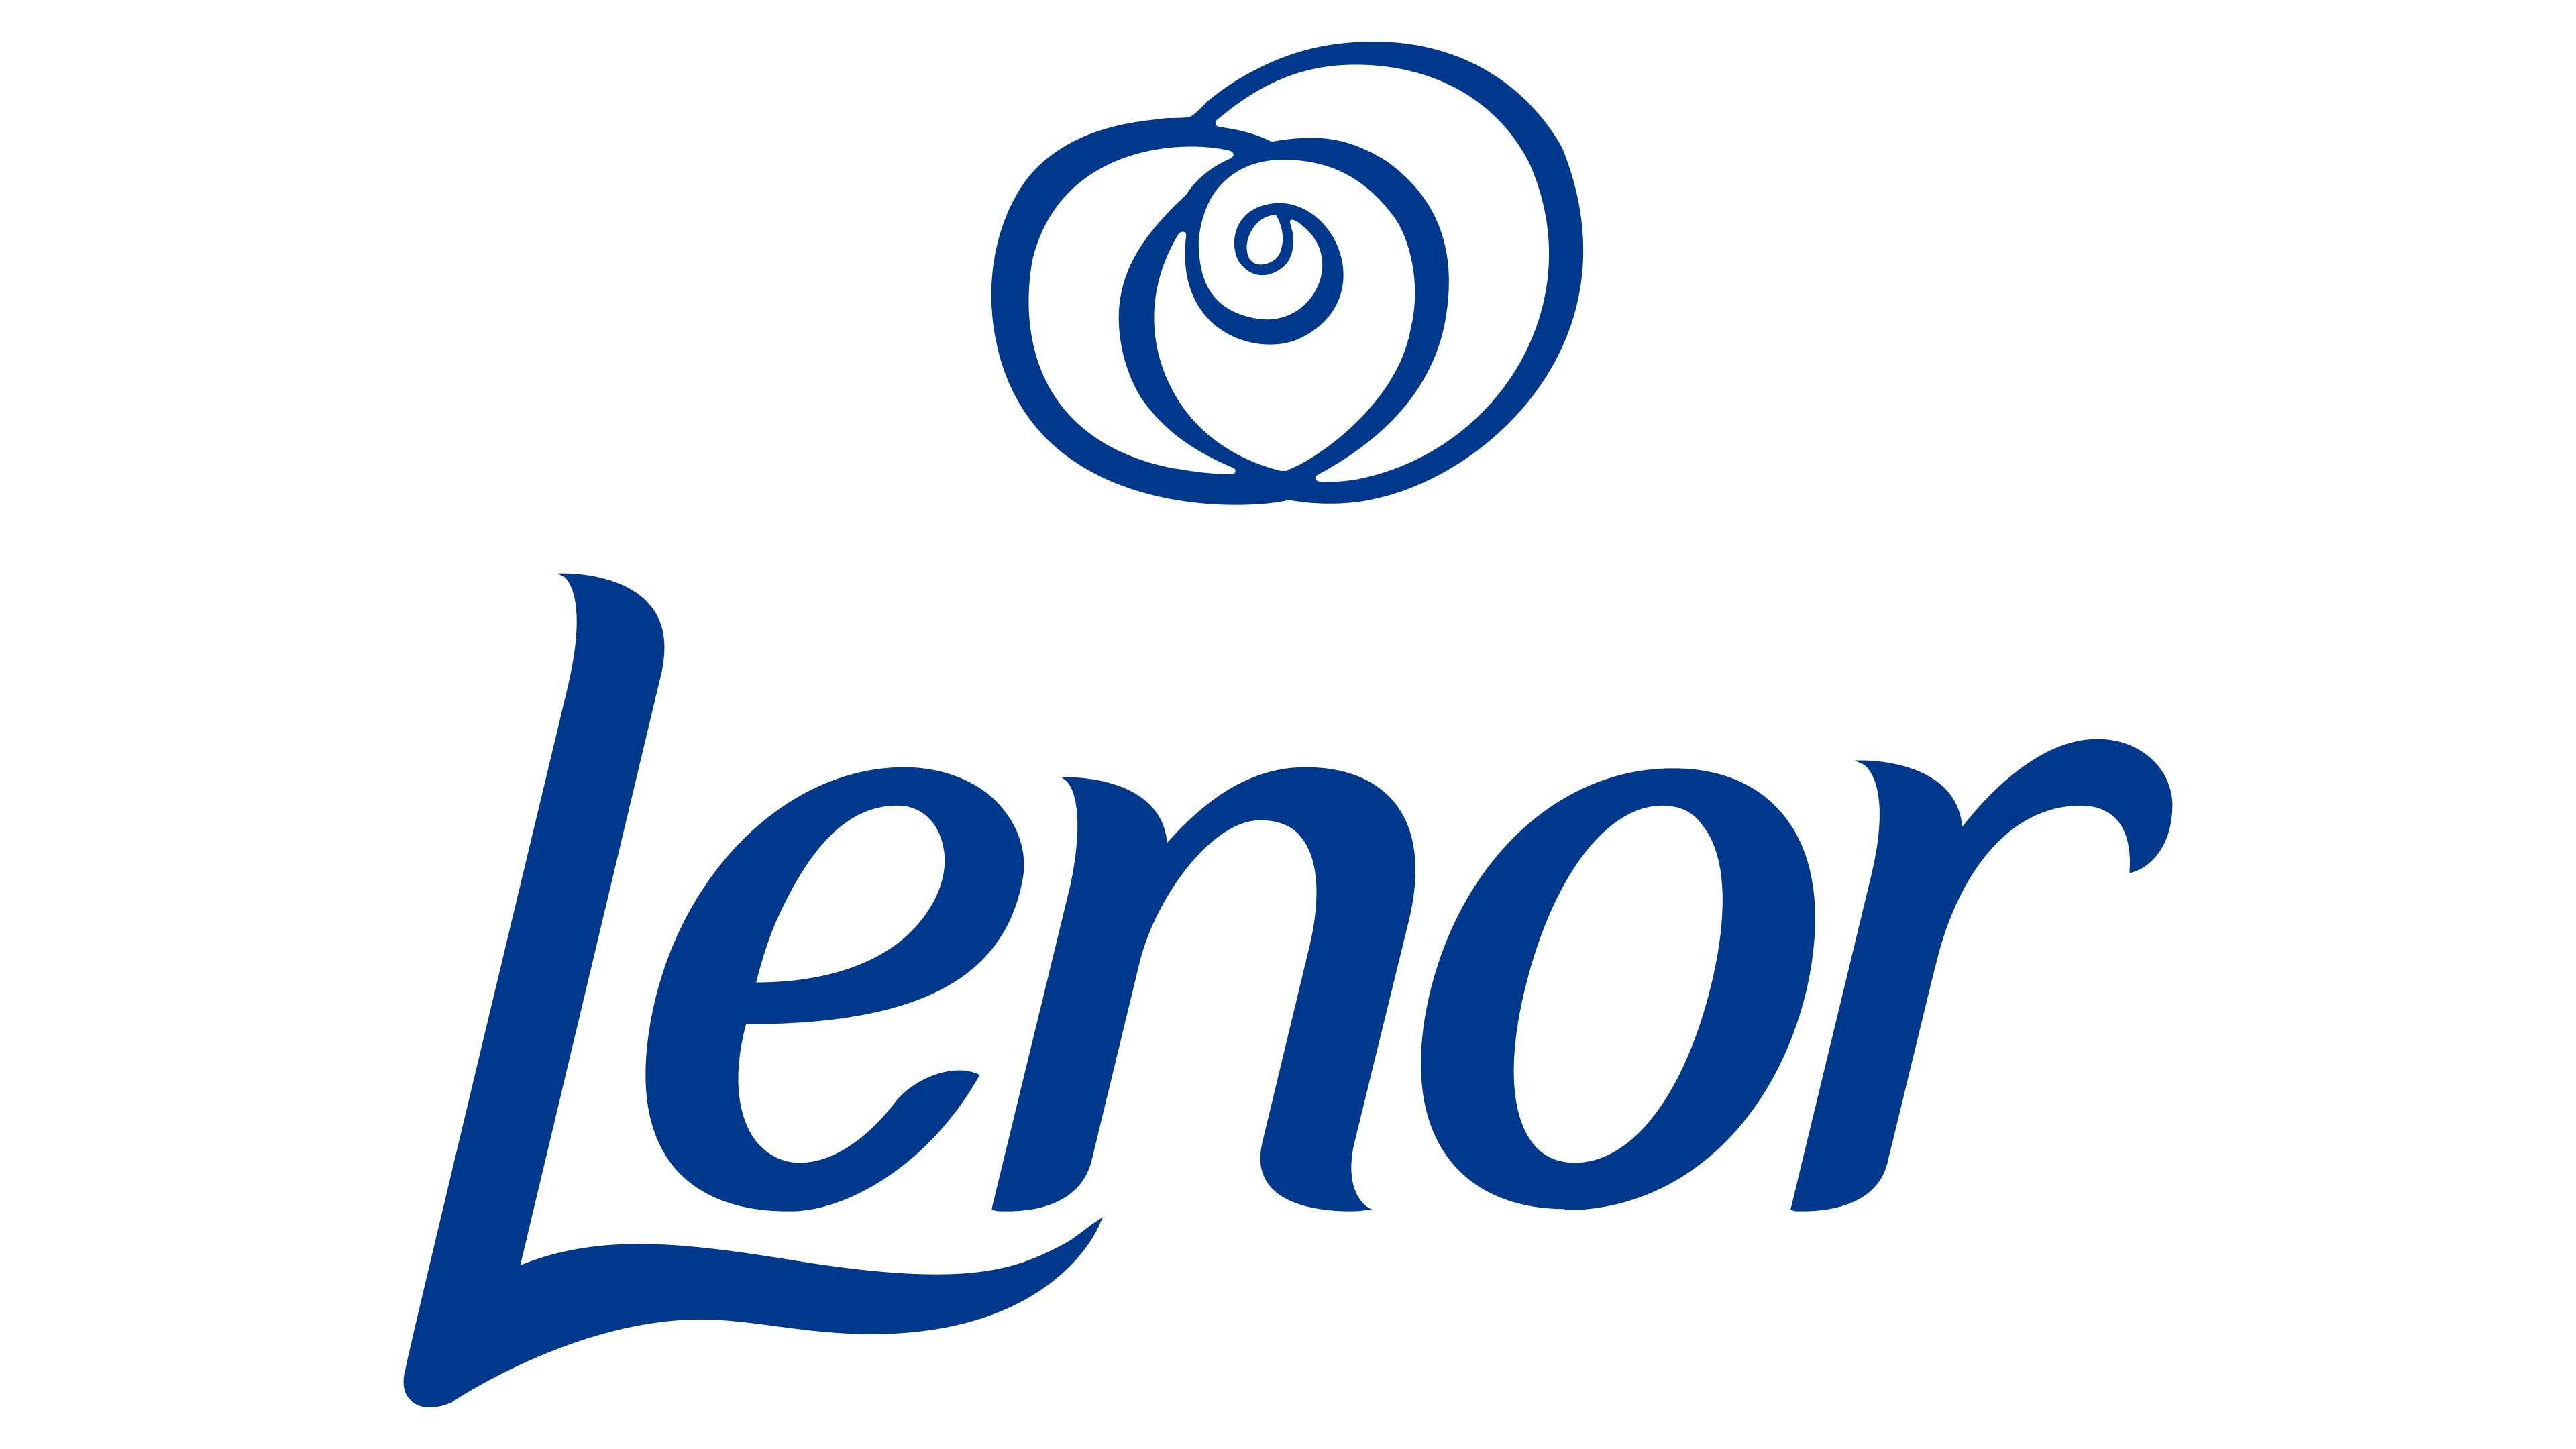 Lenor Logo : histoire, signification de l'emblème